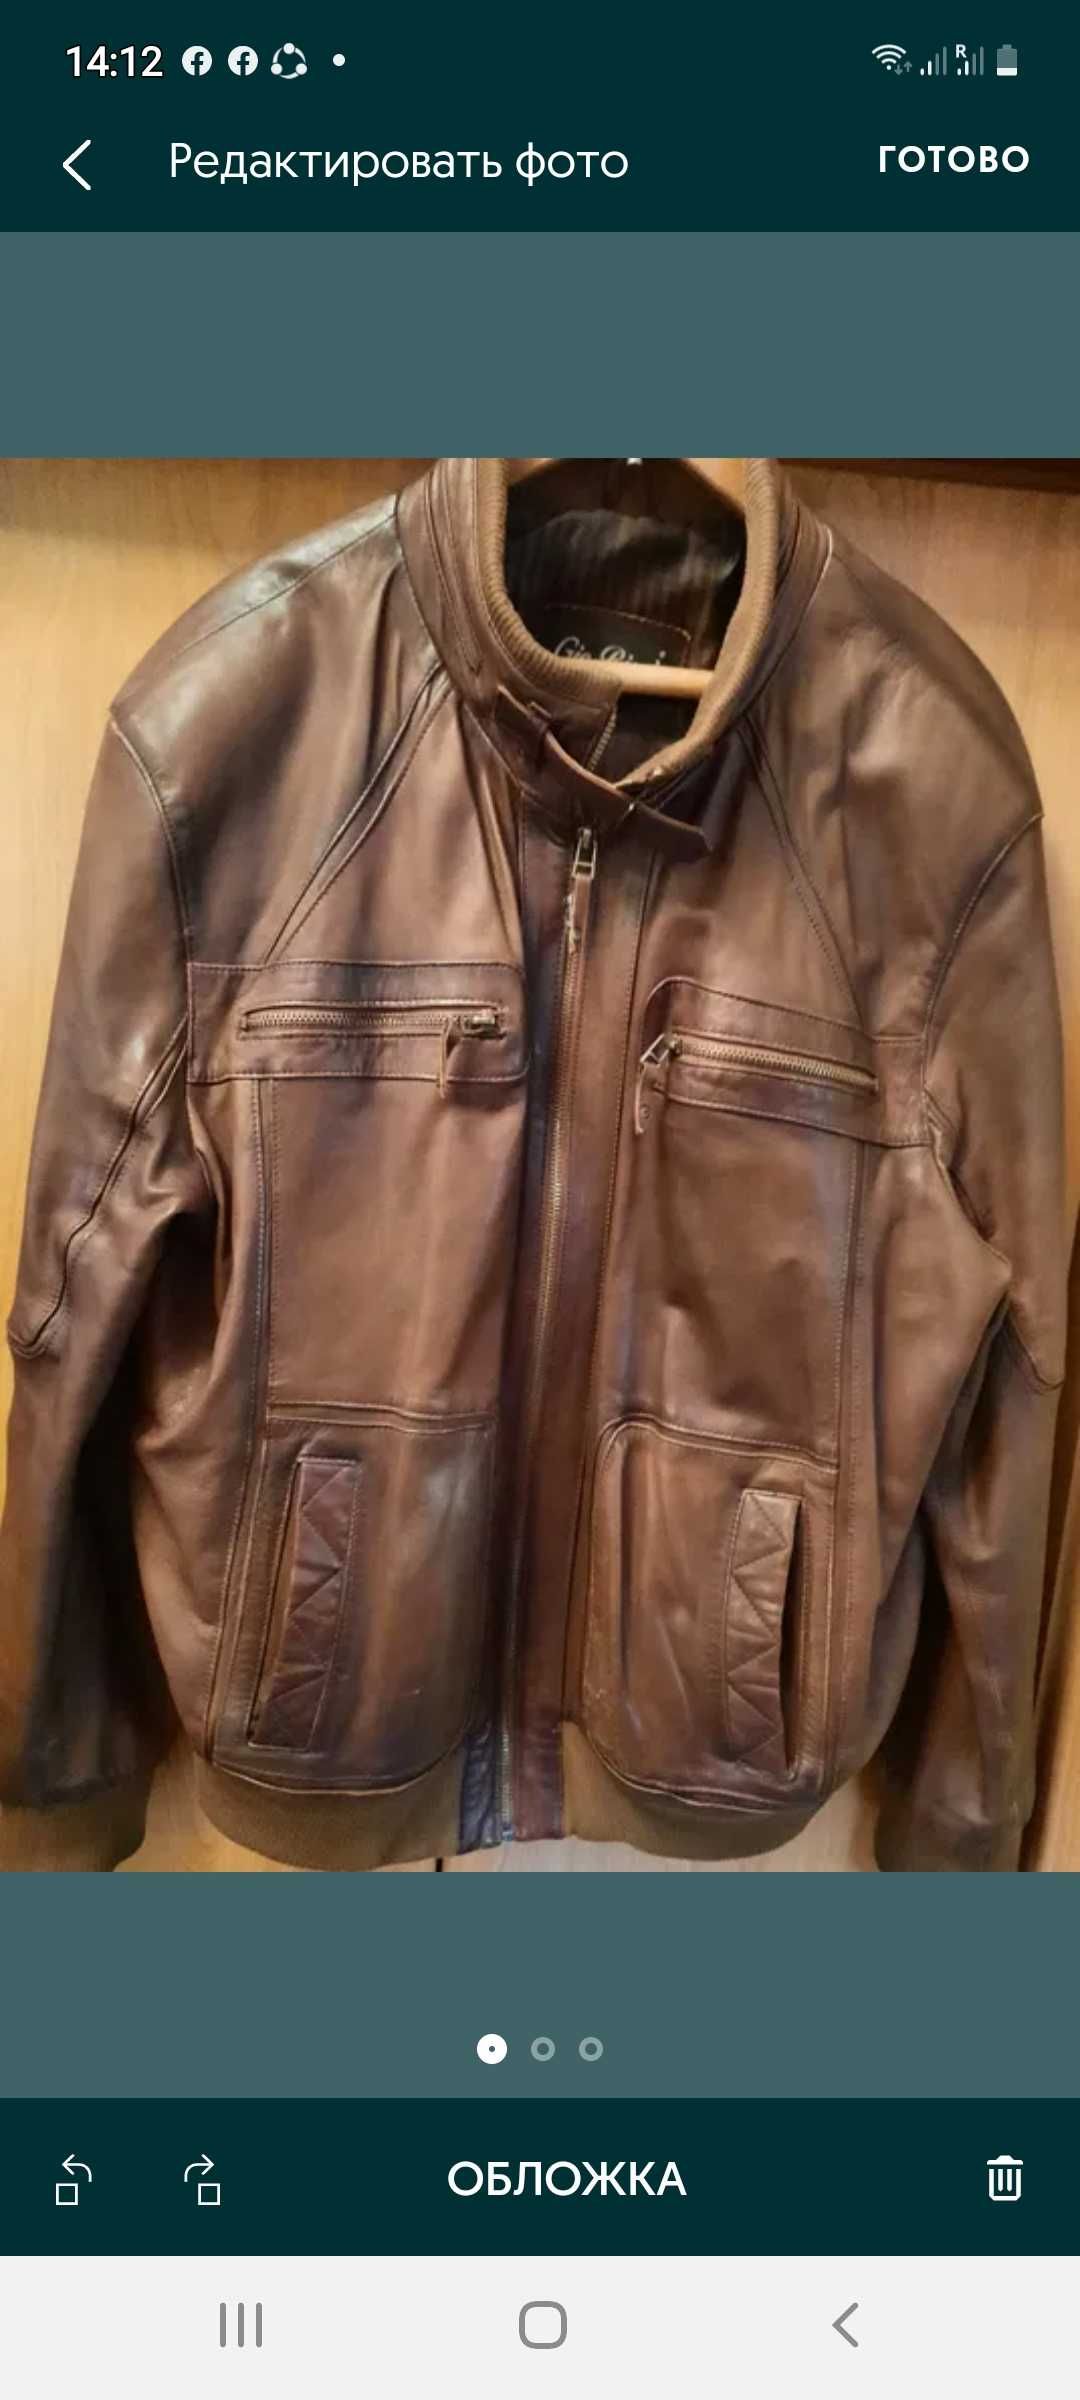 Продам мужские ( кожаную) куртки